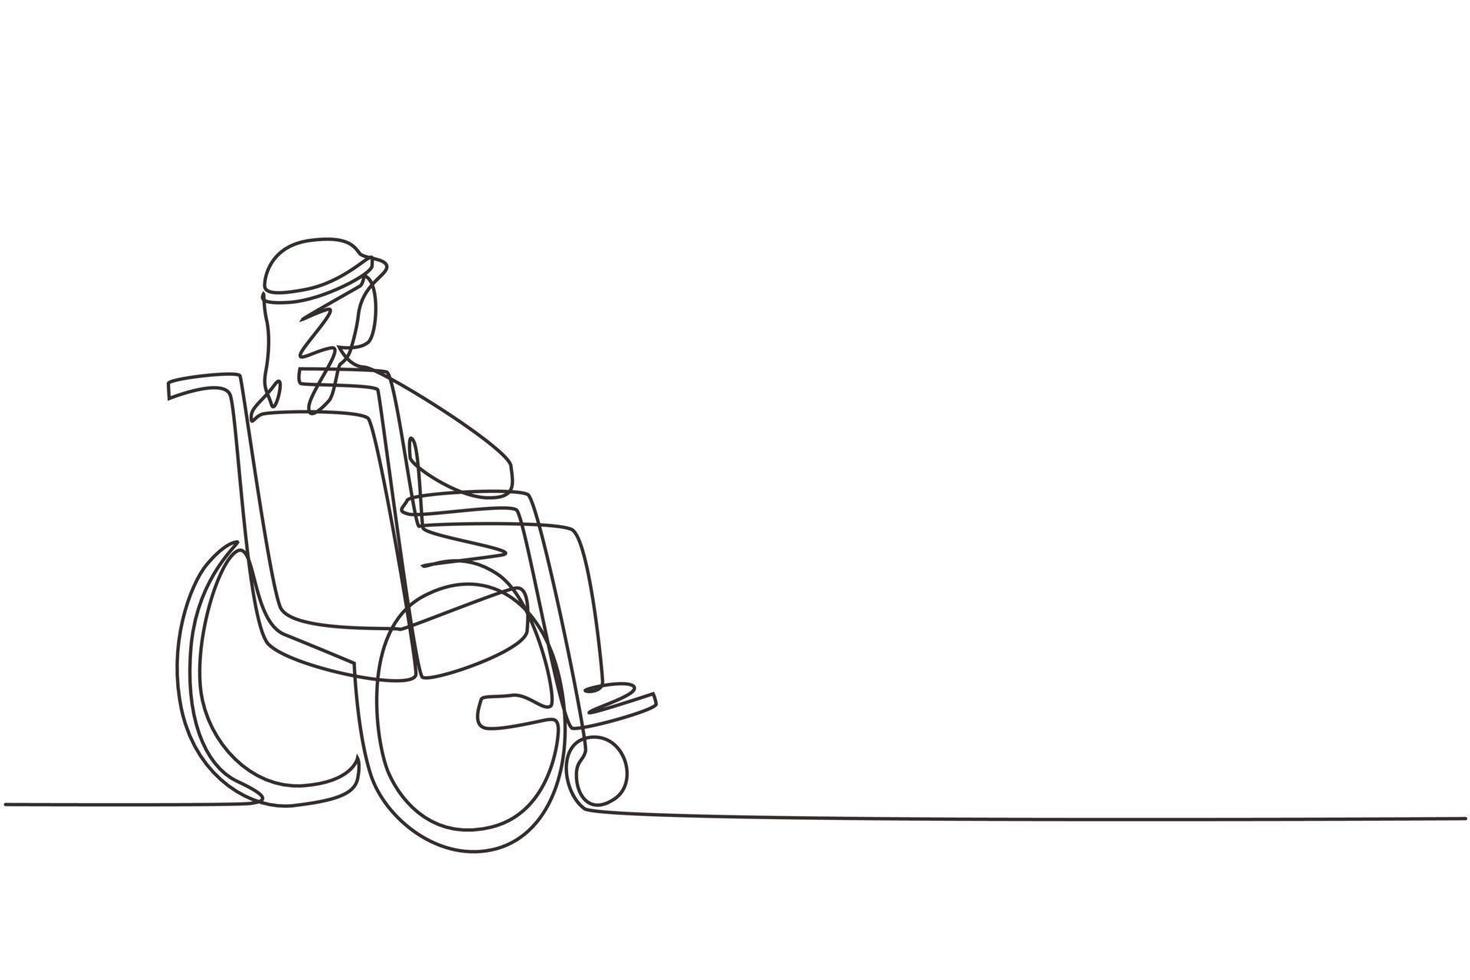 uma linha contínua desenhando o verso do velho árabe solitário sentado na cadeira de rodas, olhando para as folhas de outono secas distantes do lado de fora. solitário, desamparado, desolado, solitário. vetor de design de desenho de linha única